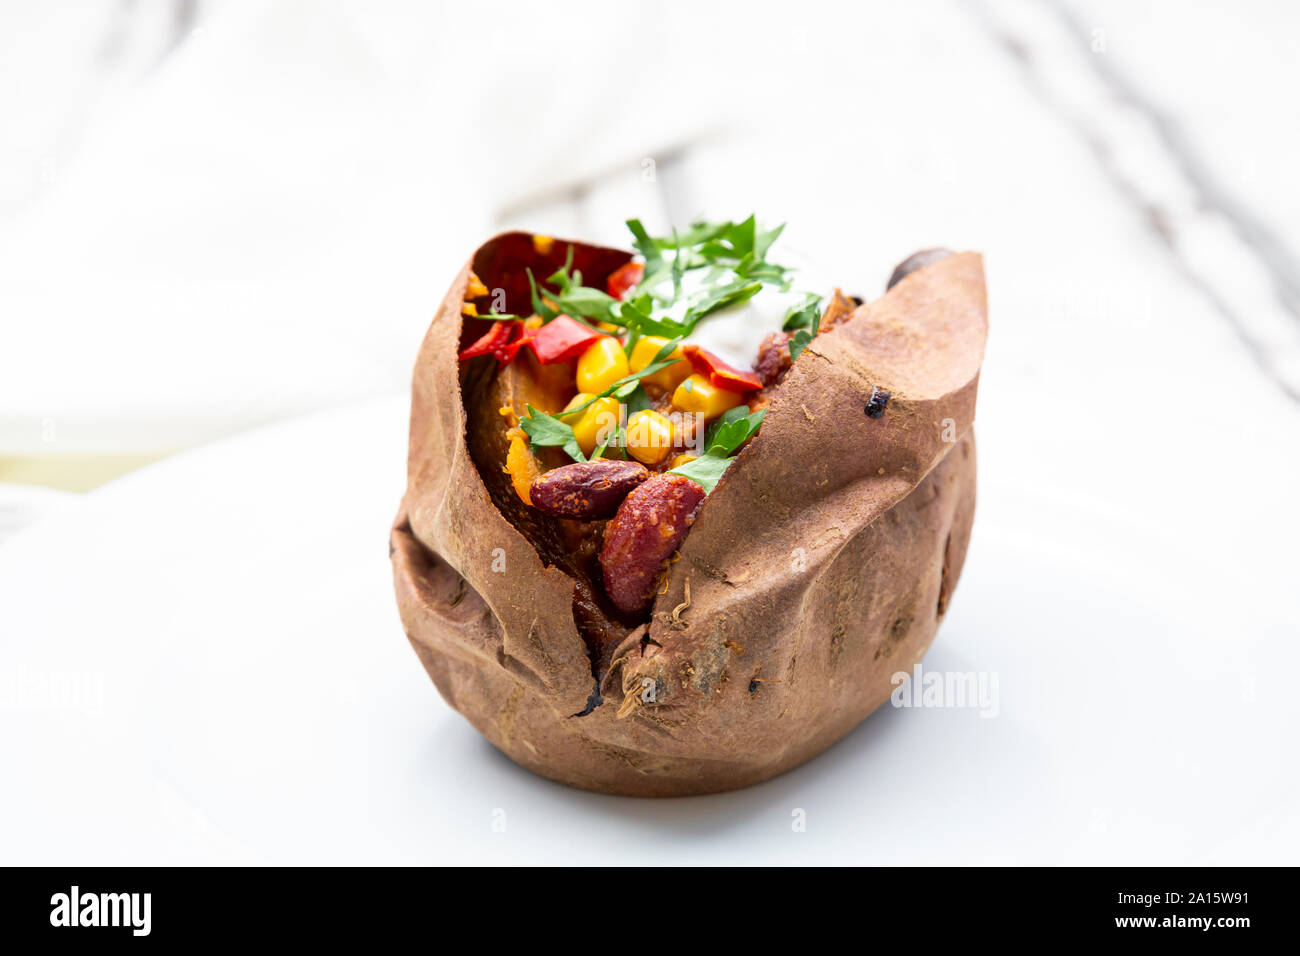 Sweet potato kumpir on plate Stock Photo